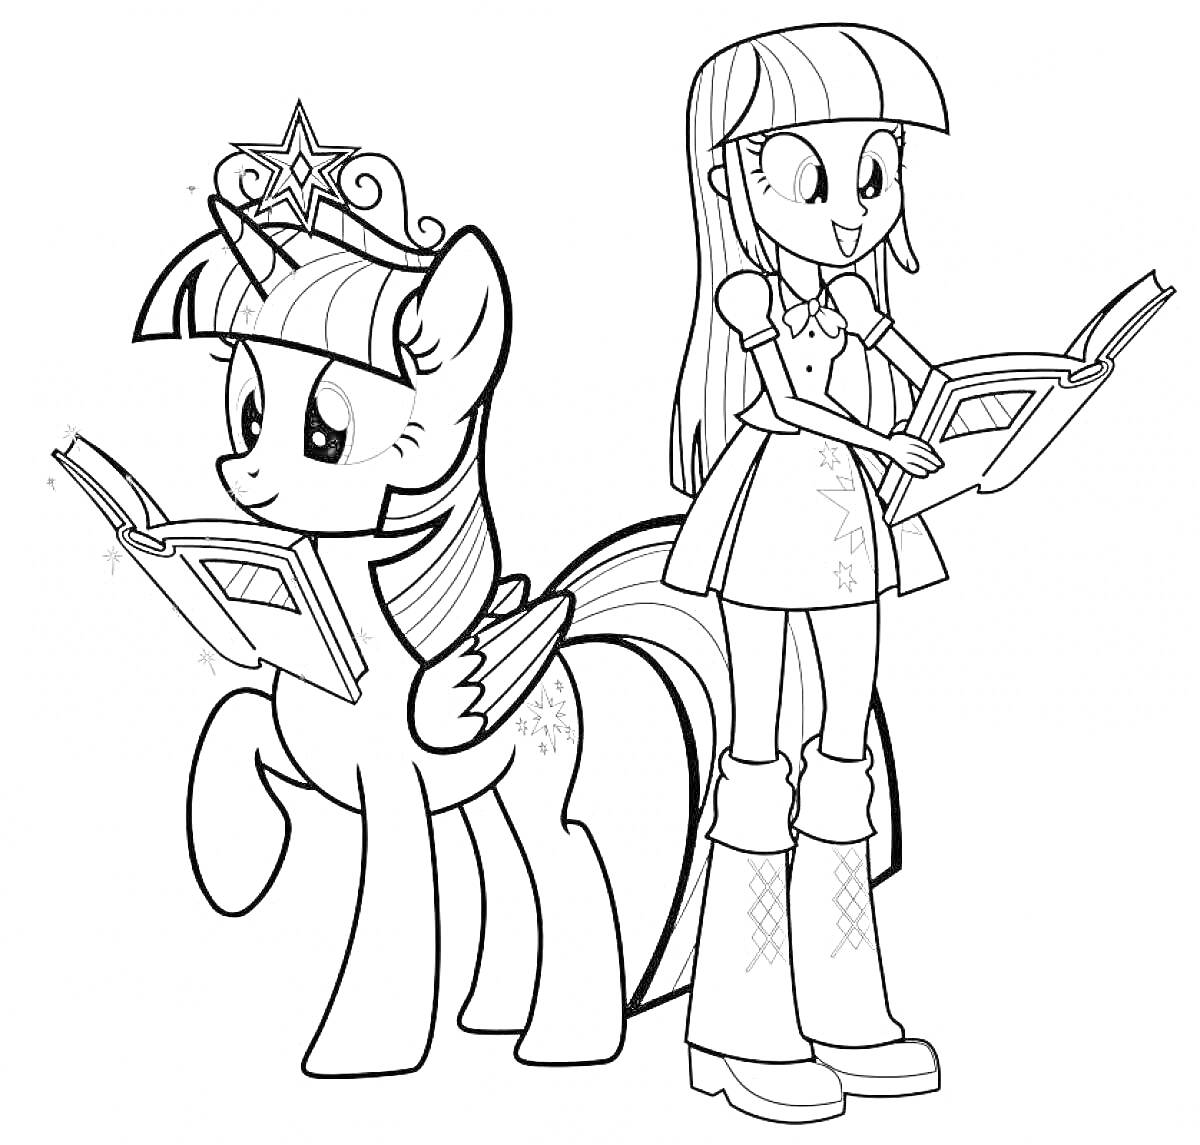 Раскраска Пони с крыльями и короной читает книгу, рядом стоит девочка с длинными волосами, читающая книгу.